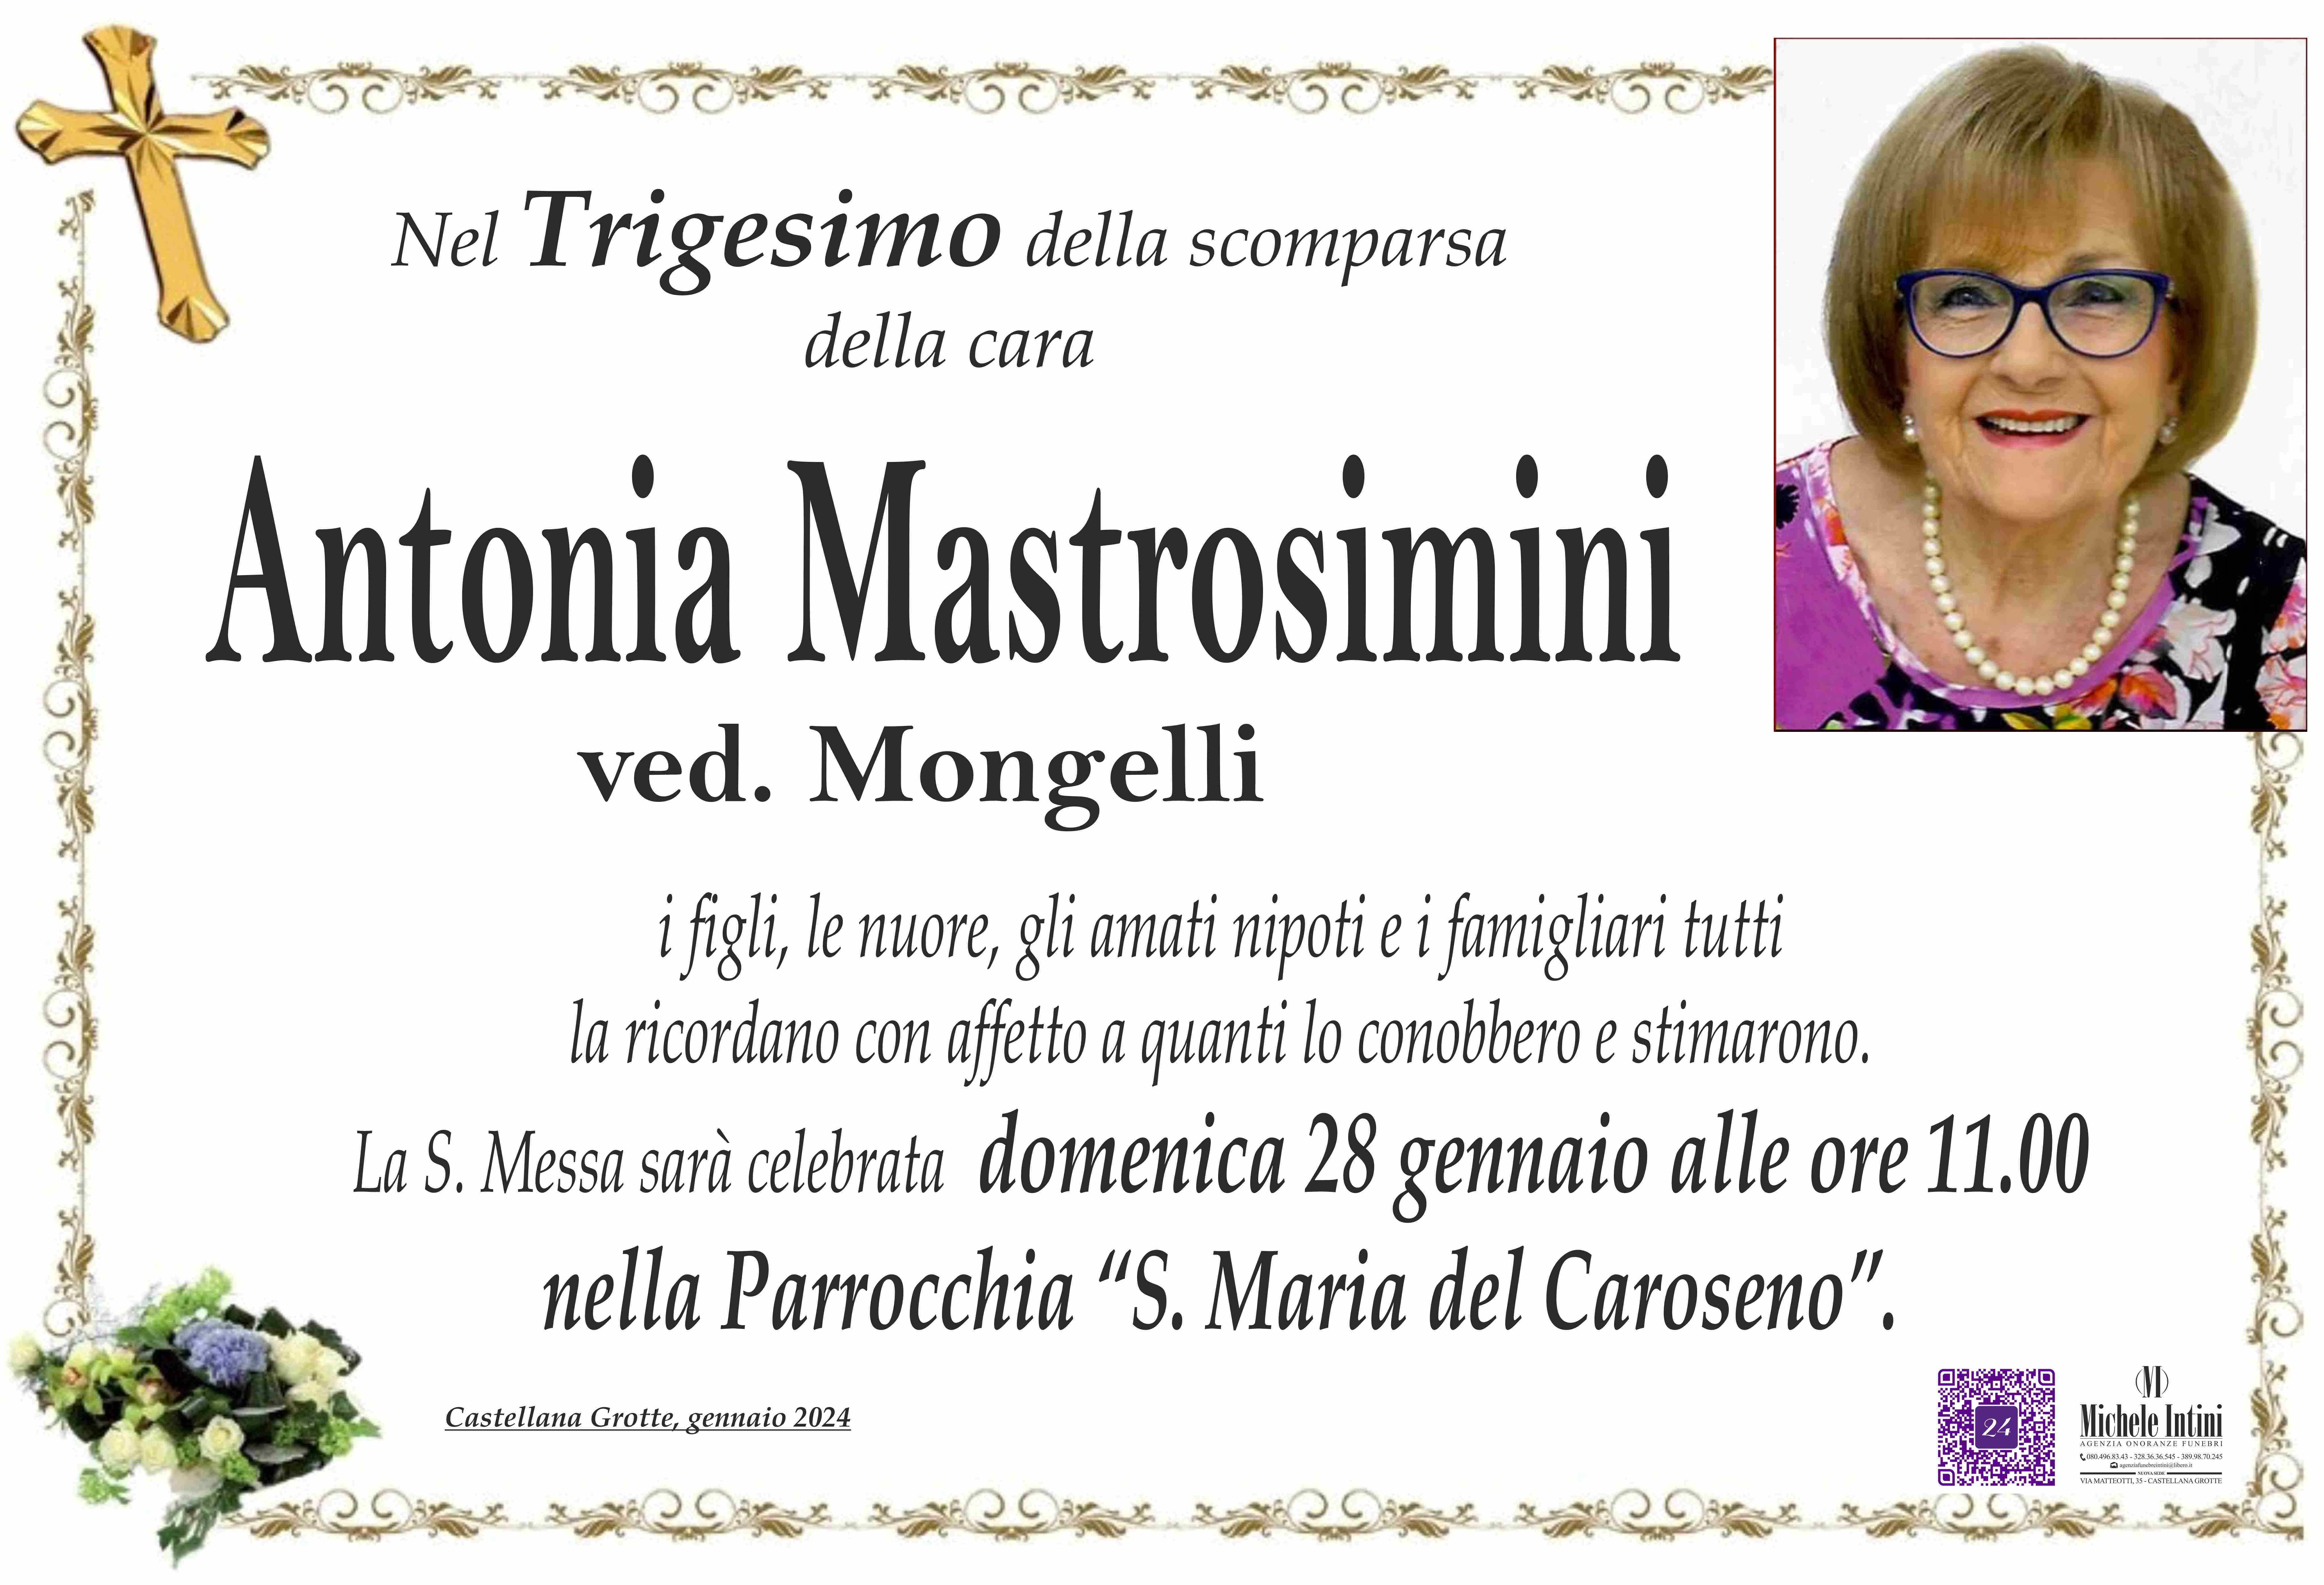 Antonia Mastrosimini